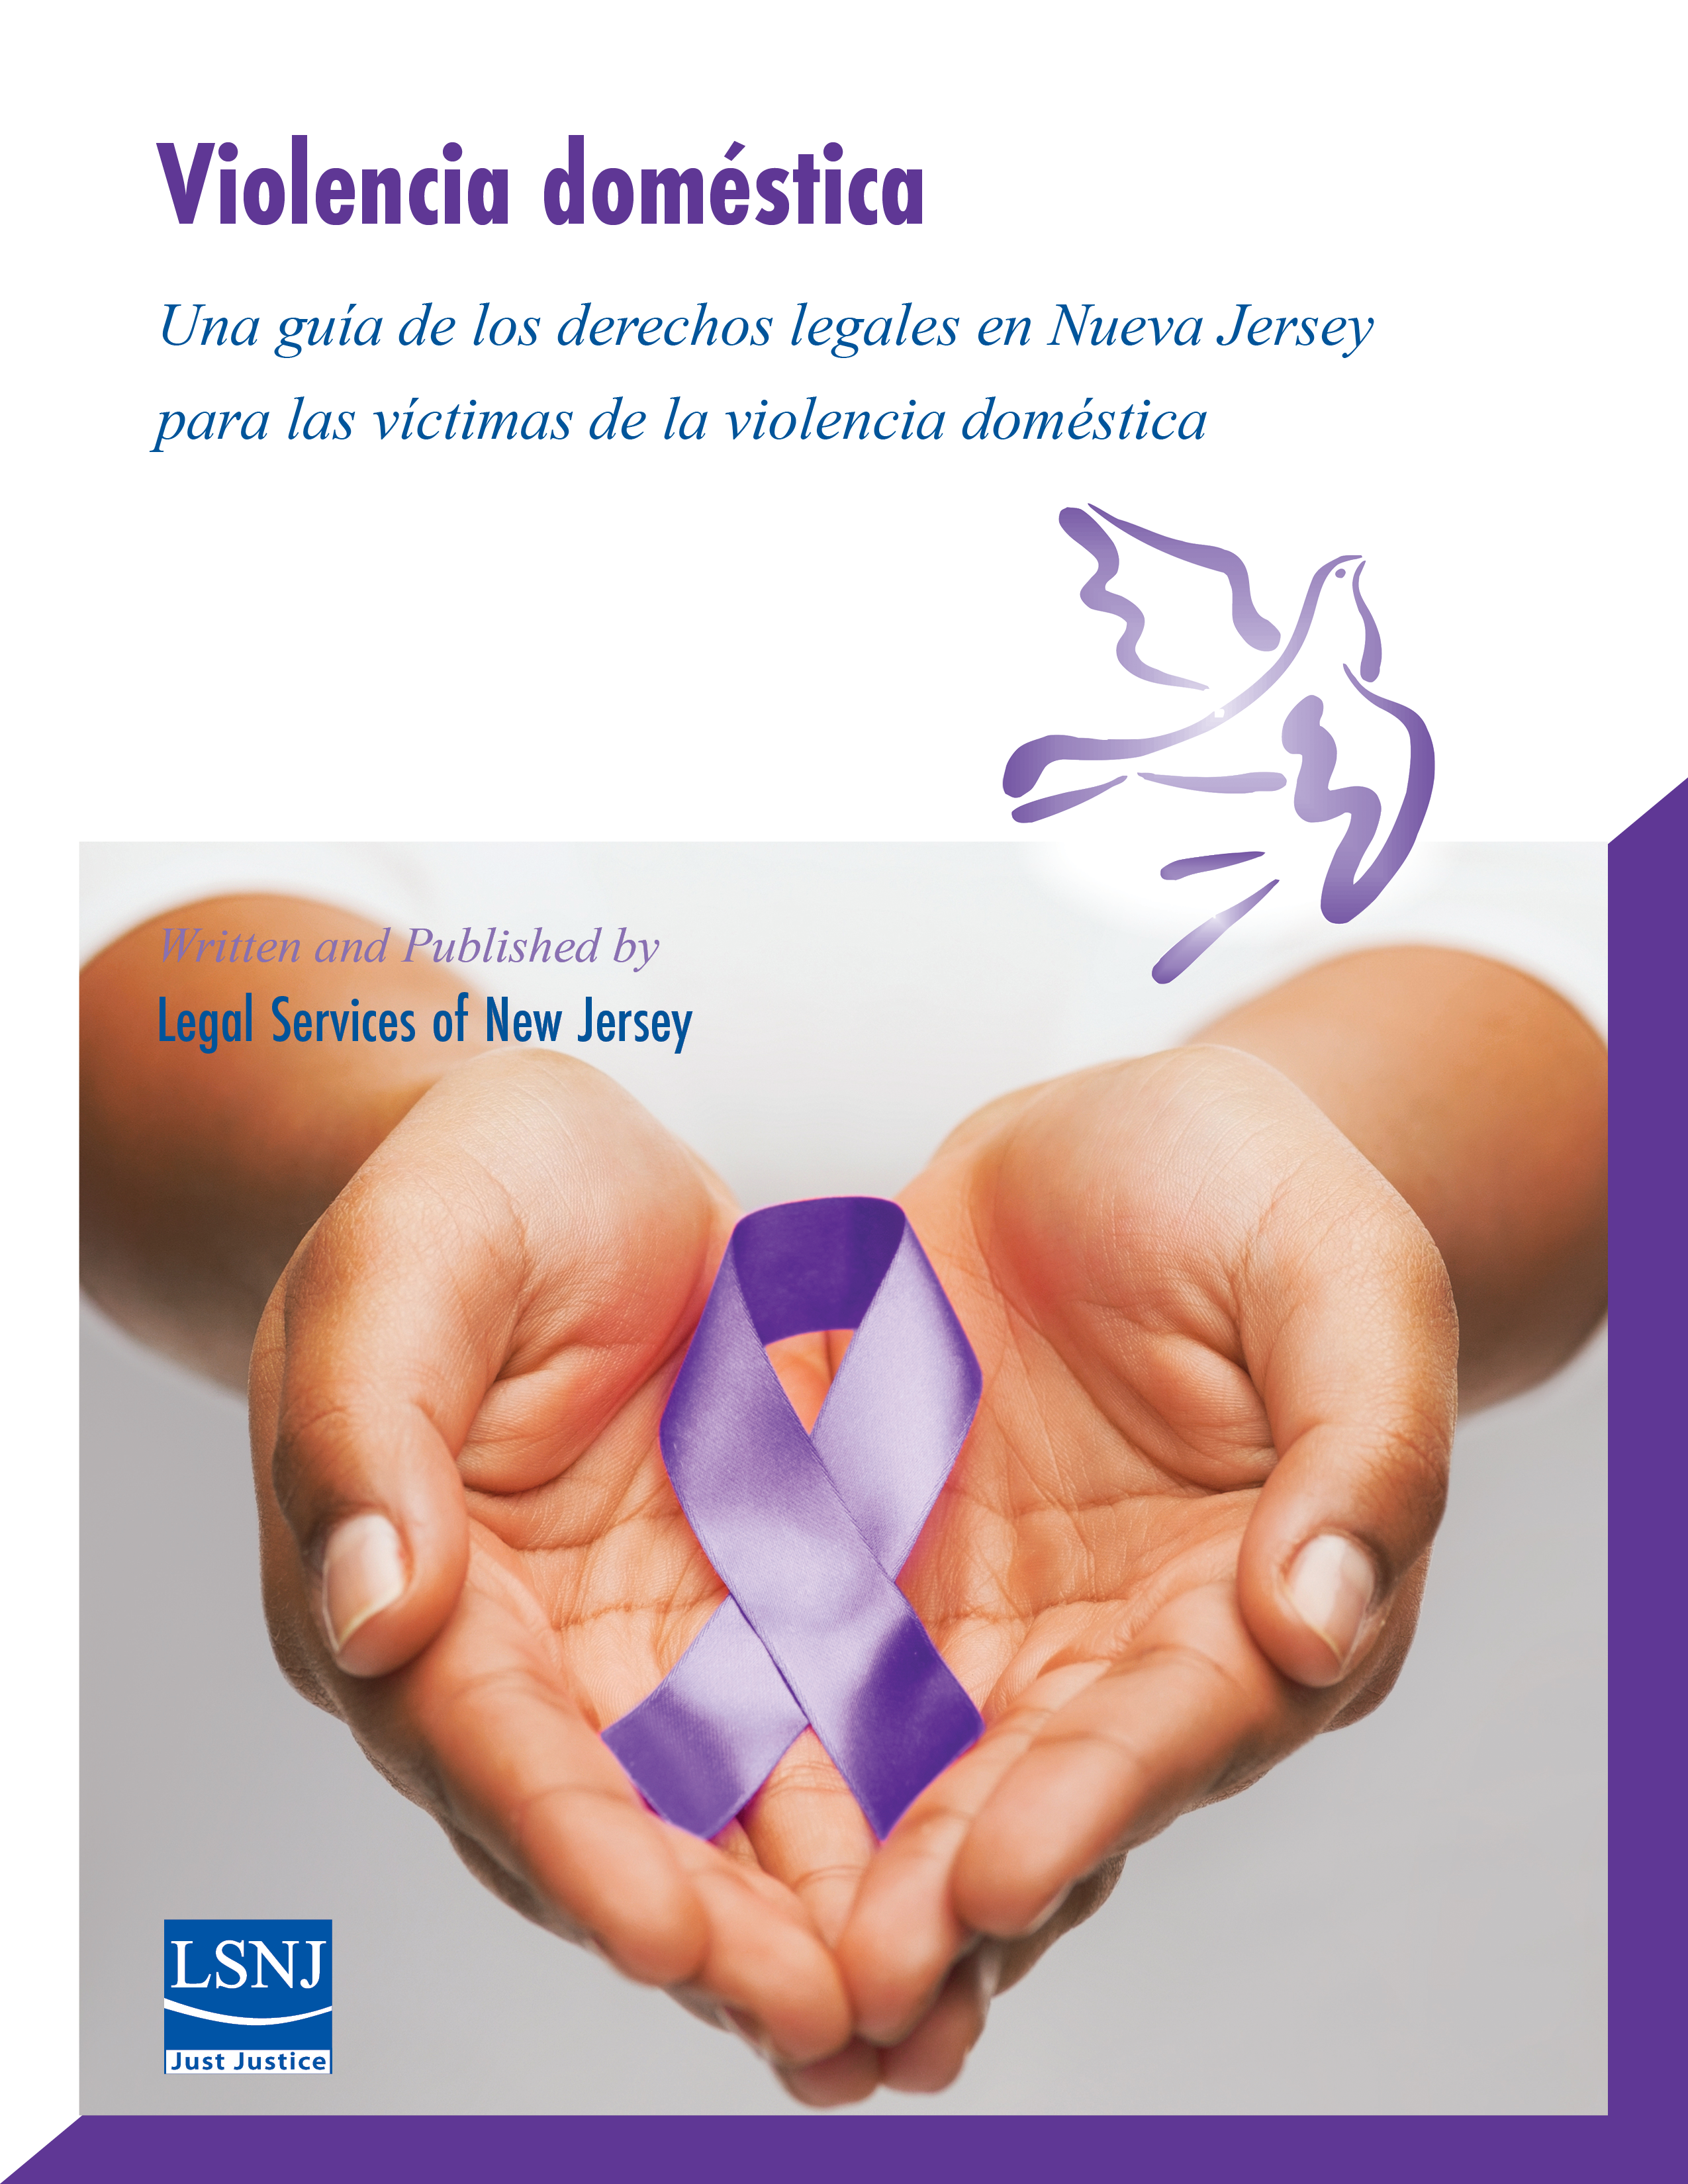 La violencia doméstica: Una guía de los derechos legales en Nueva Jersey para las victimas de la violencia doméstica